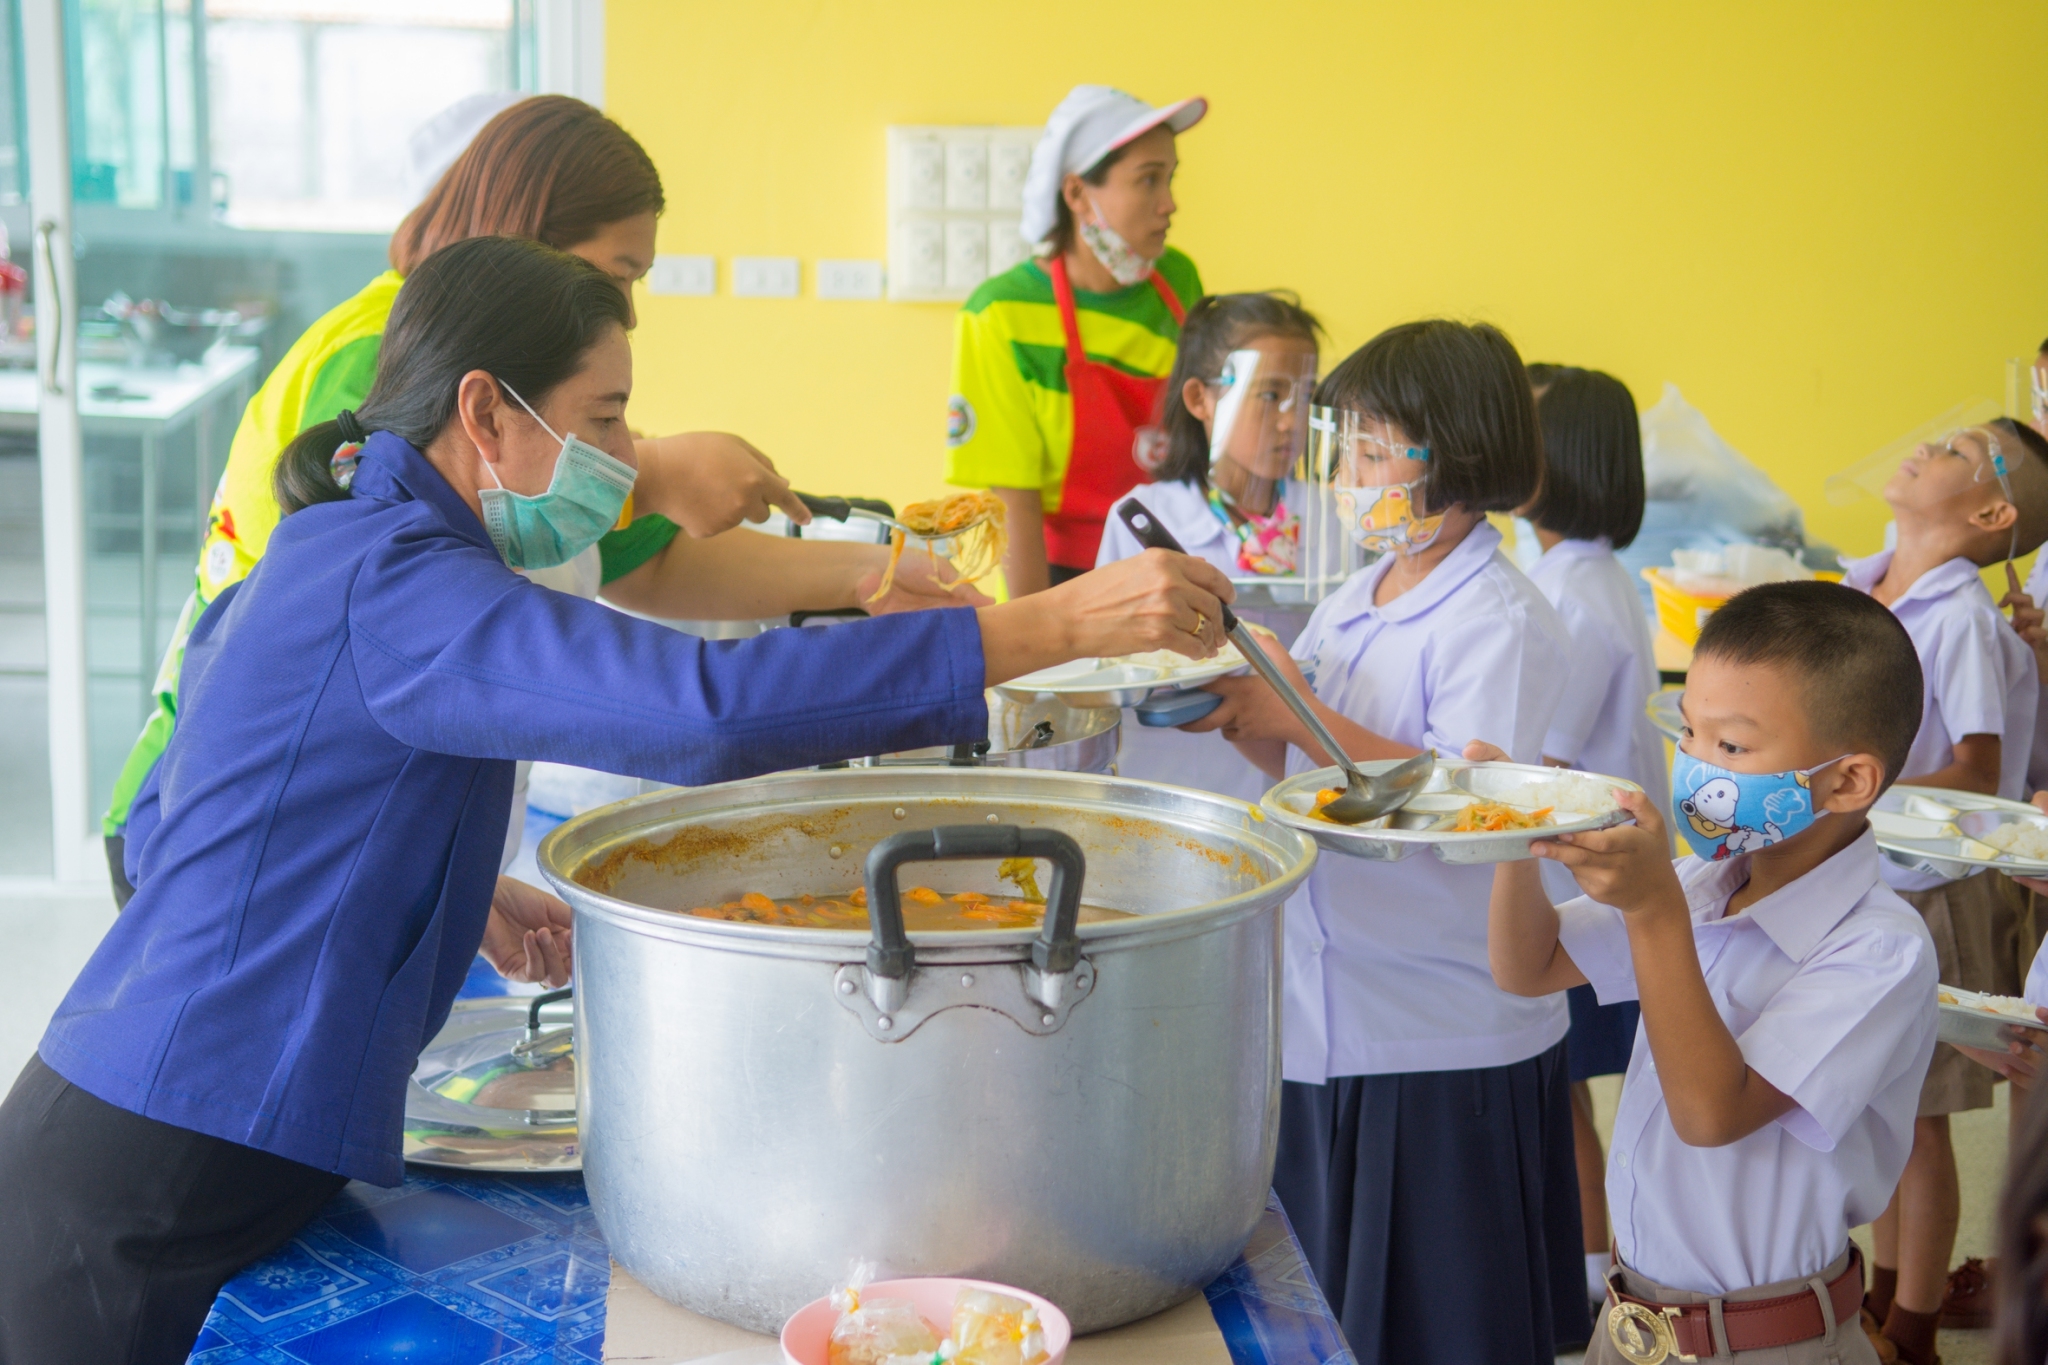 เทศบาลเมืองกะทู้ต่อยอดโรงครัวช่วงโควิด-19 สู่บริการอาหารเช้า กลางวัน ให้นักเรียนโรงเรียนในสังกัดเพื่อแบ่งเบาภาระผู้ปกครอง